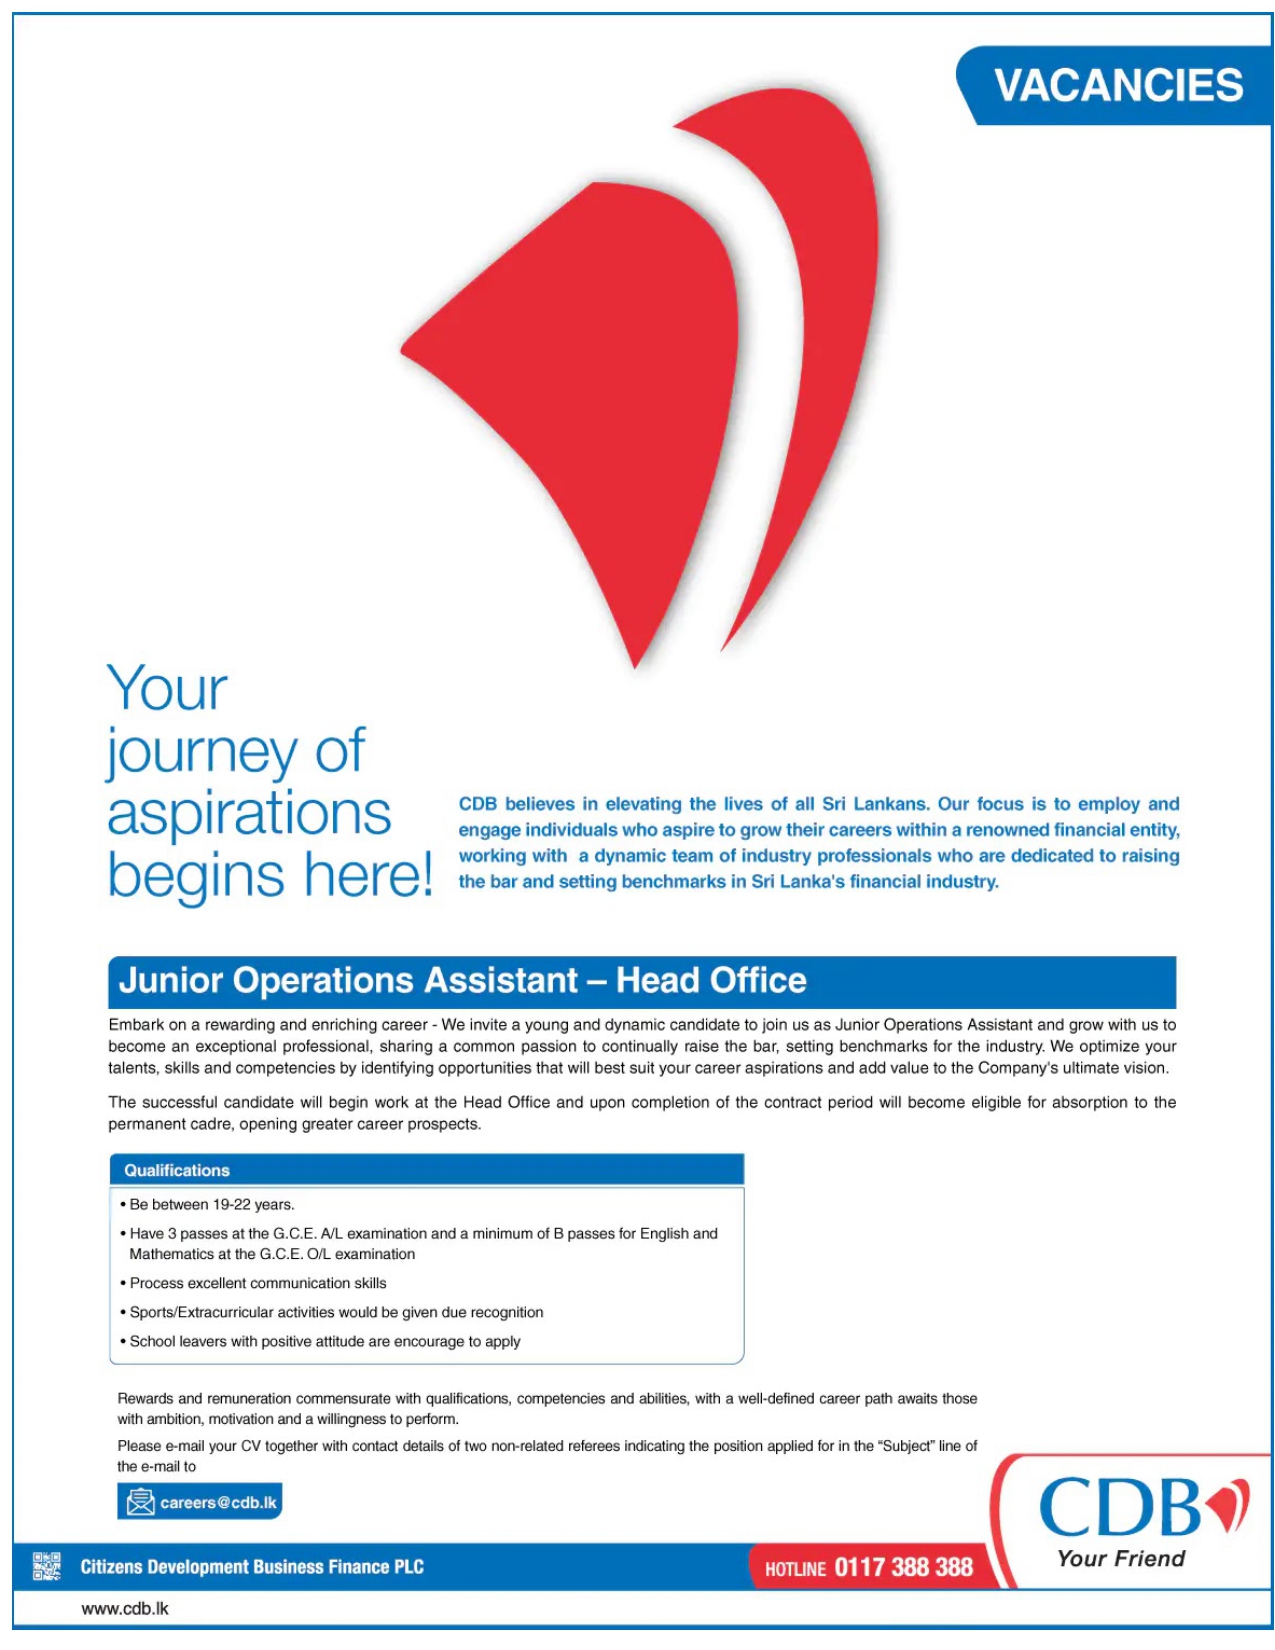 Junior Operations Assistant (Head Office) Vacancies - CDB Finance Jobs Vacancies Details